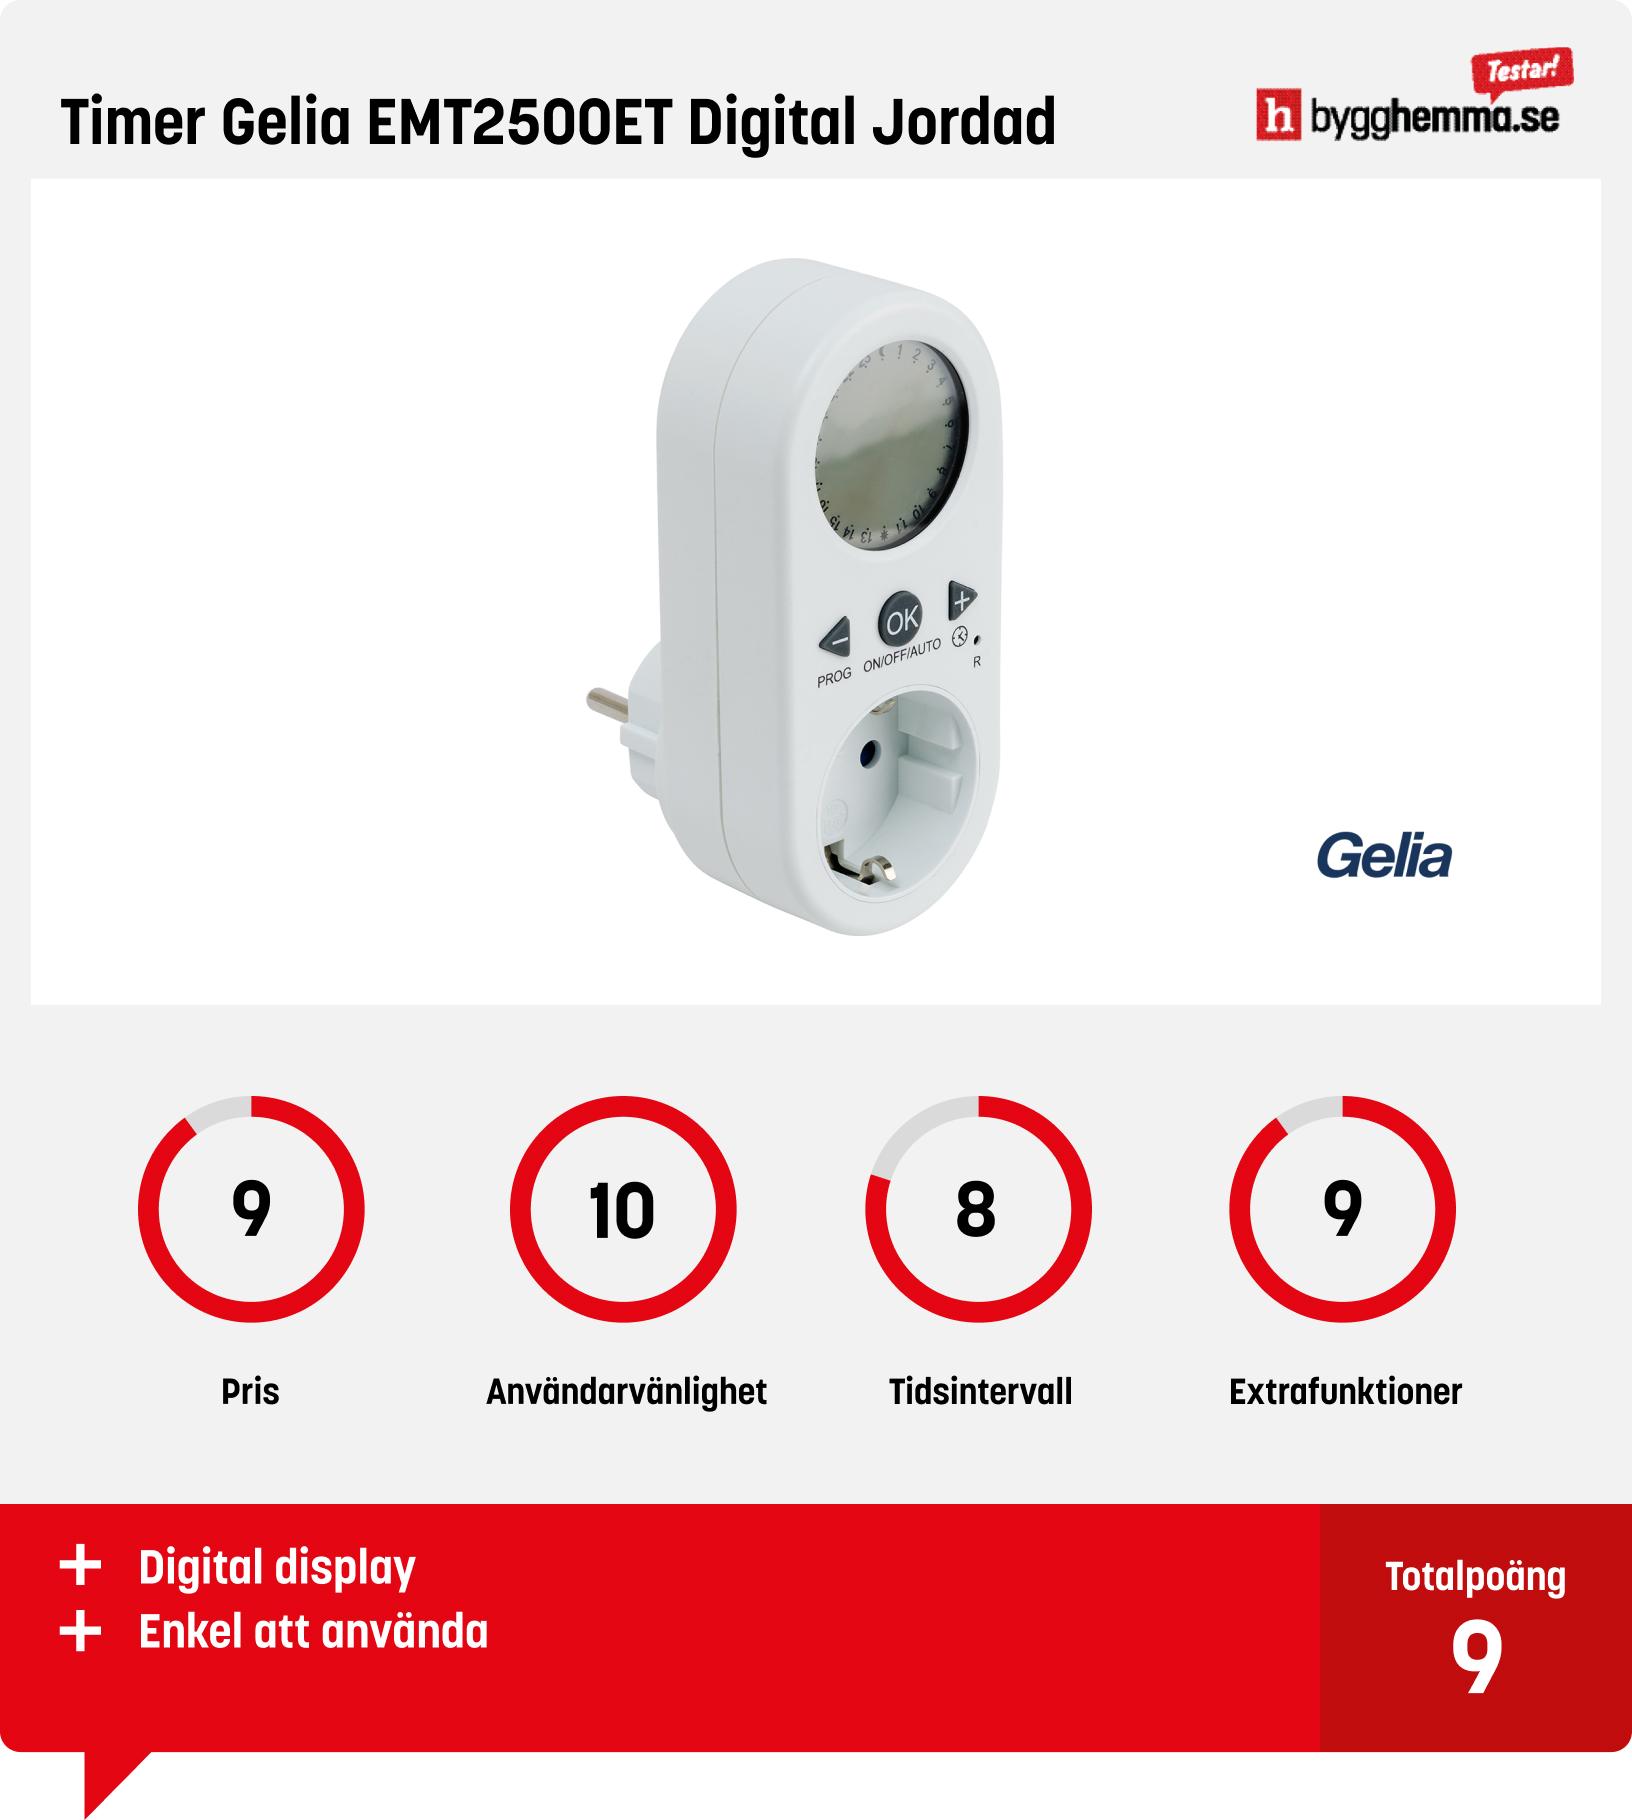 Timer inomhus bäst i test - Timer Gelia EMT2500ET Digital Jordad